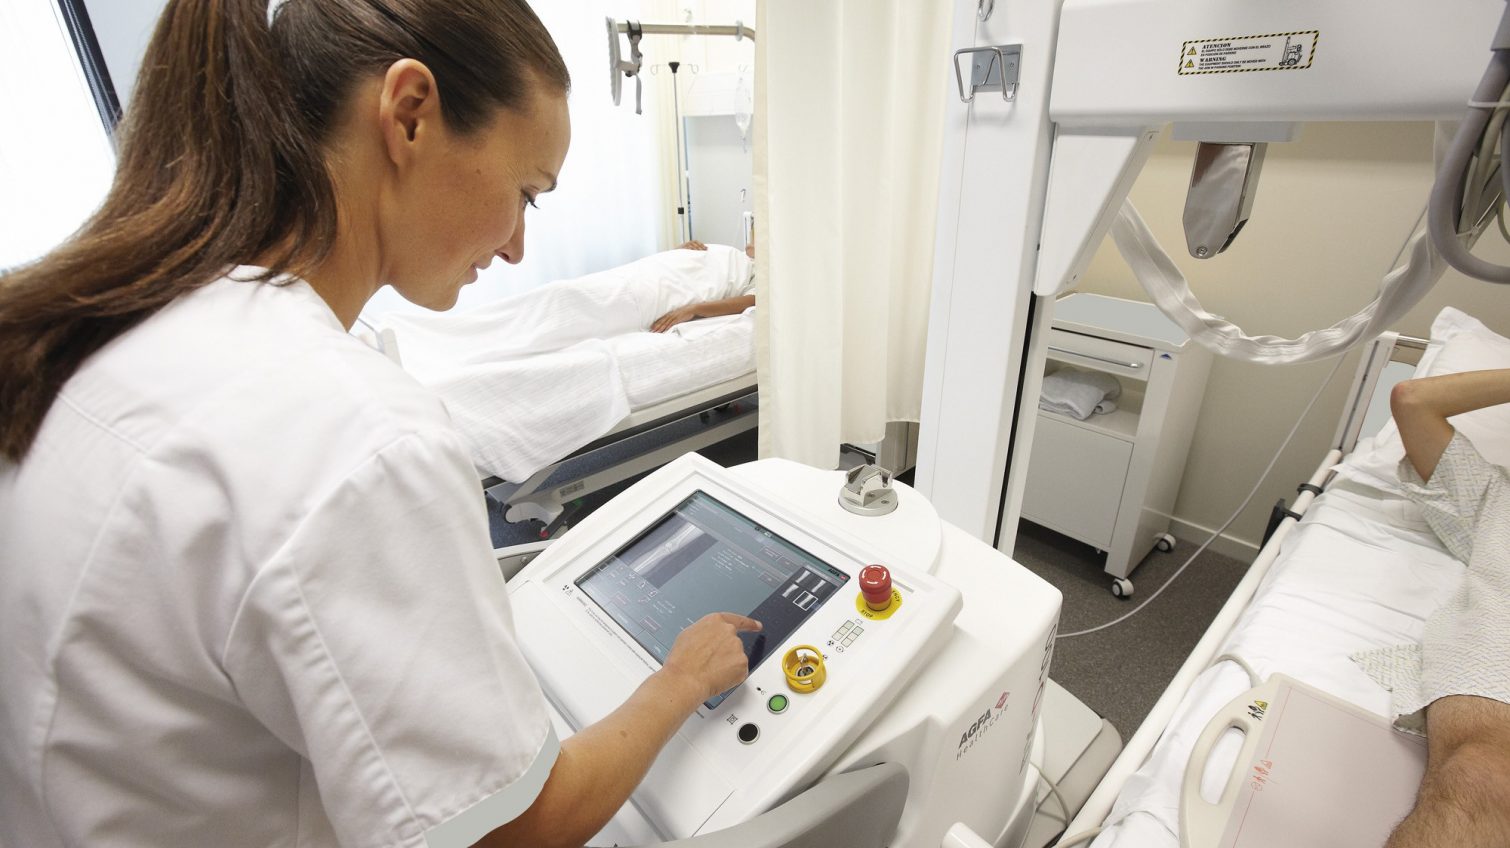 Новый мобильный рентген аппарат за 2 миллиона гривен купят в амбулаторию Одесской области «фото»